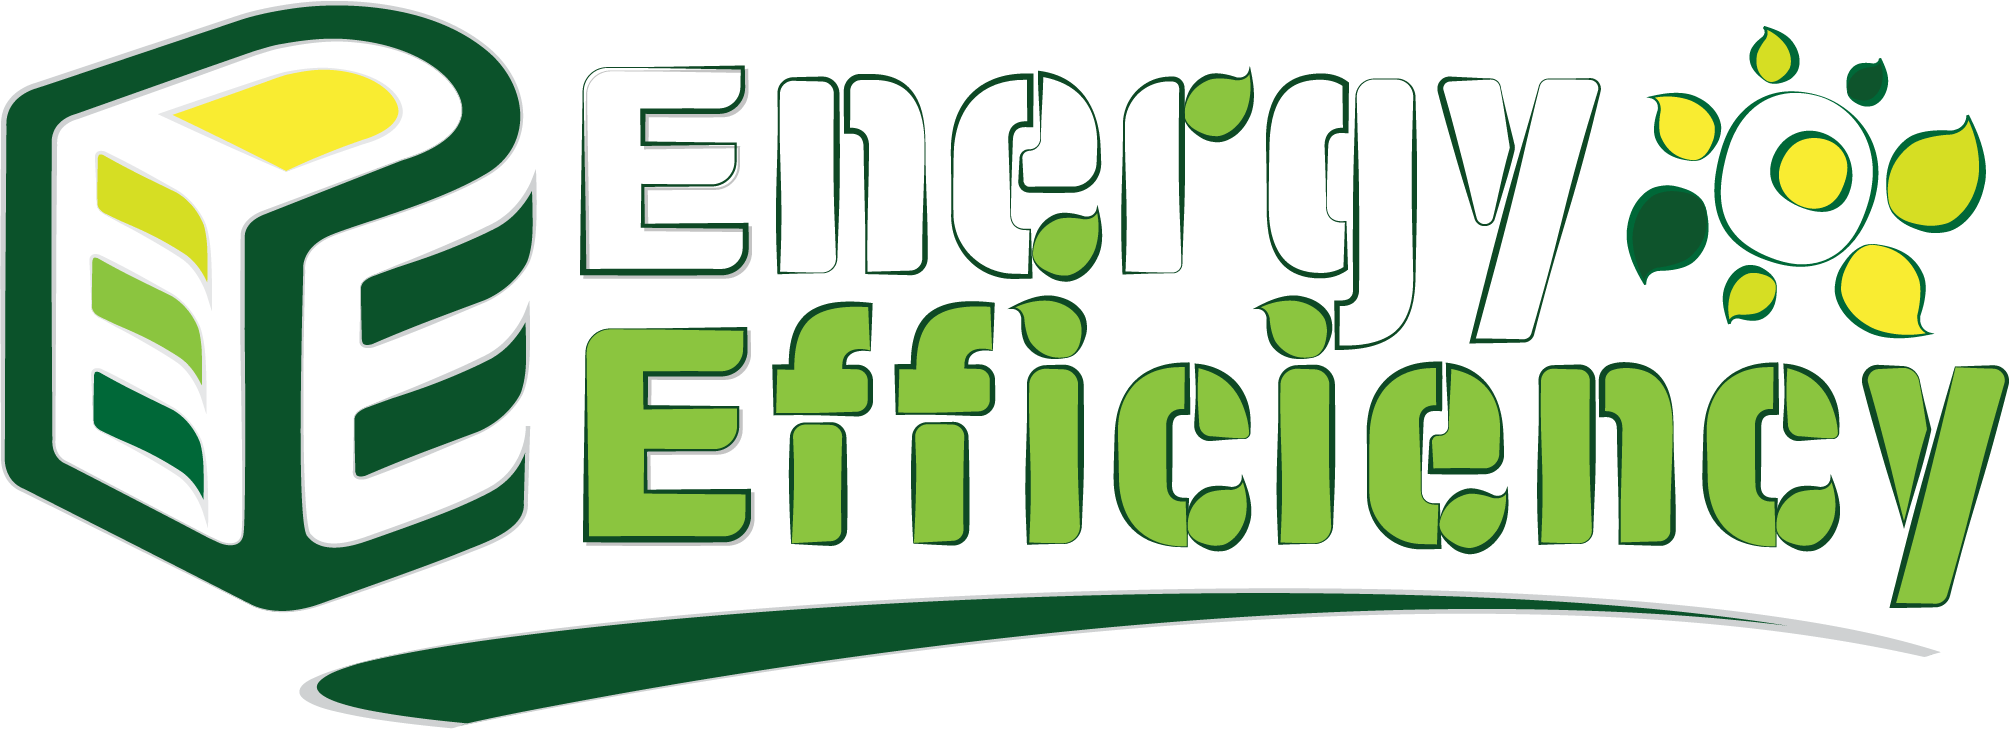 Energy Efficiency